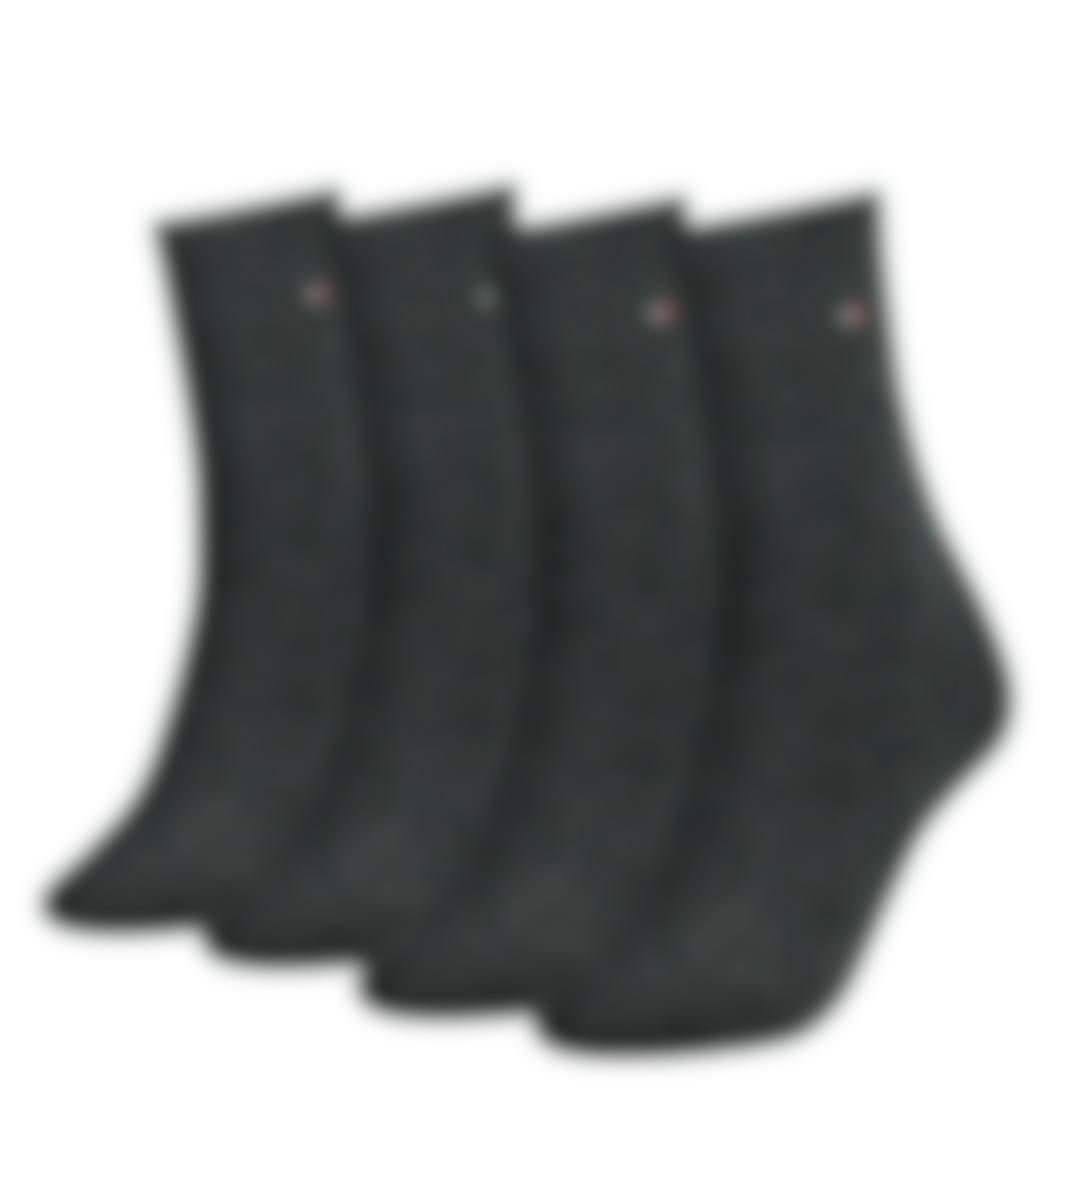 Tommy Hilfiger sokken 4 paar Women Sock Casual D